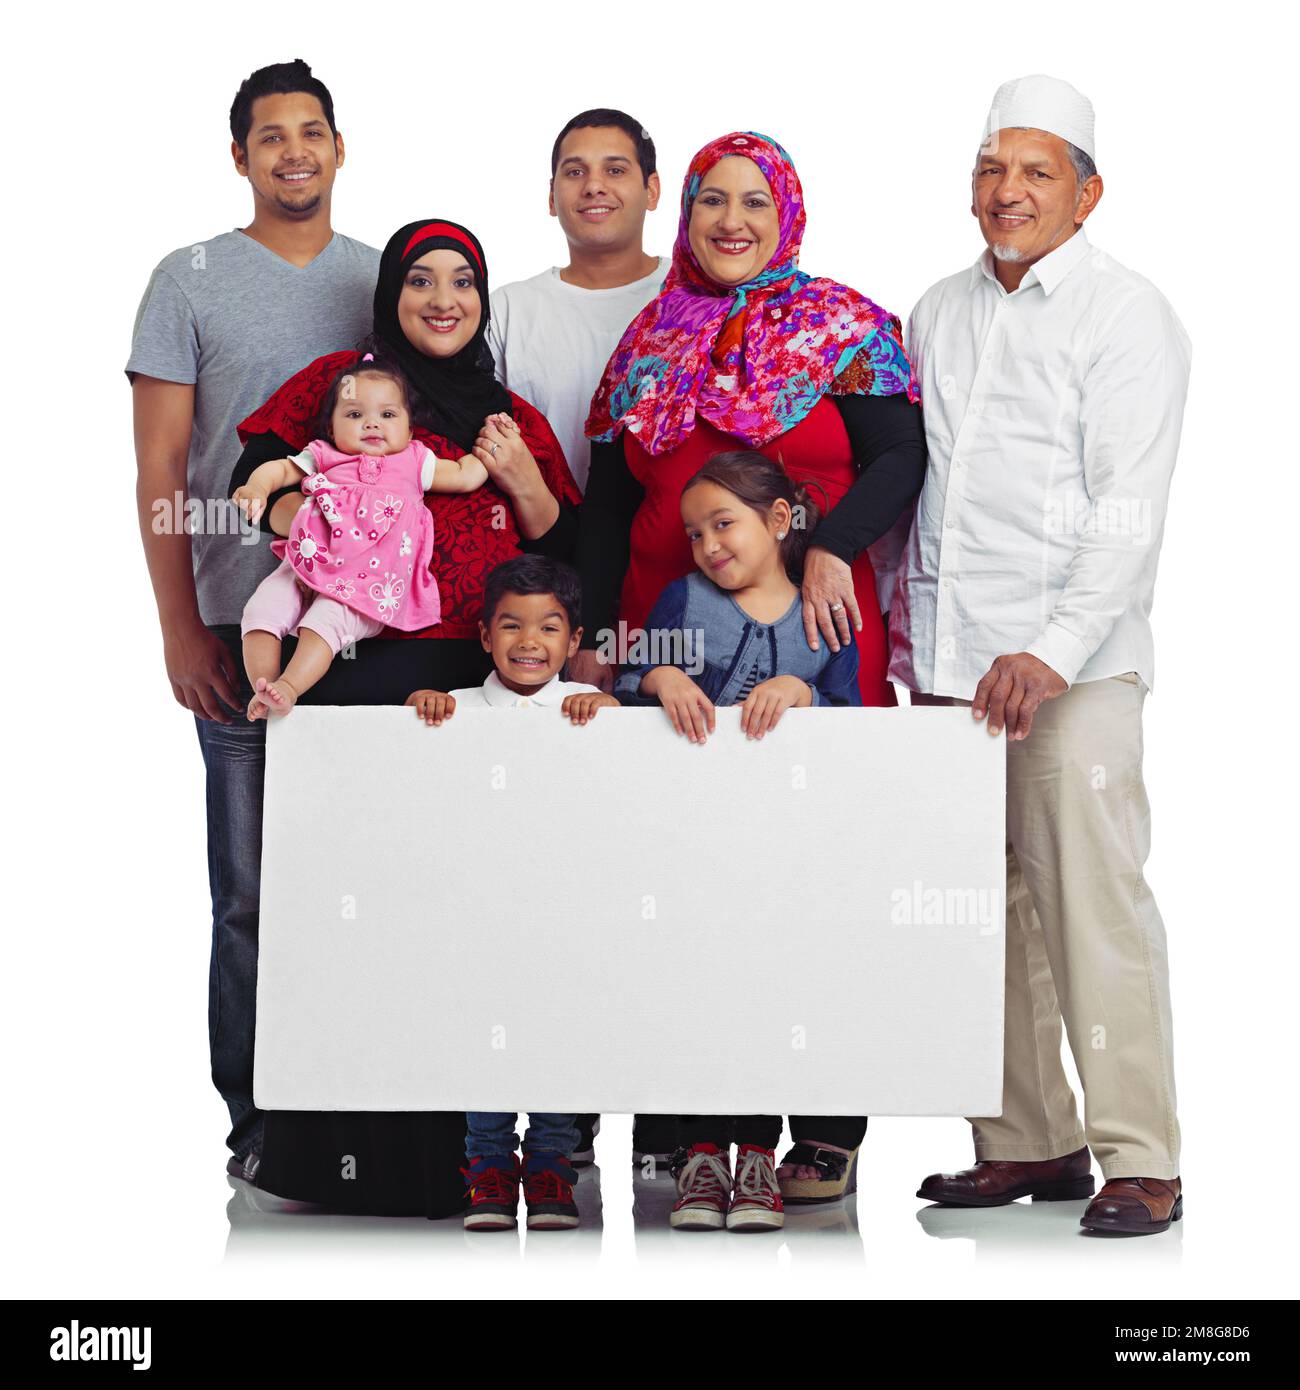 Affiche, portrait et famille musulmane avec un espace pour faire de la publicité sur la religion islamique auprès des enfants, des hommes et des femmes. Les musulmans et les enfants avec enseigne Banque D'Images